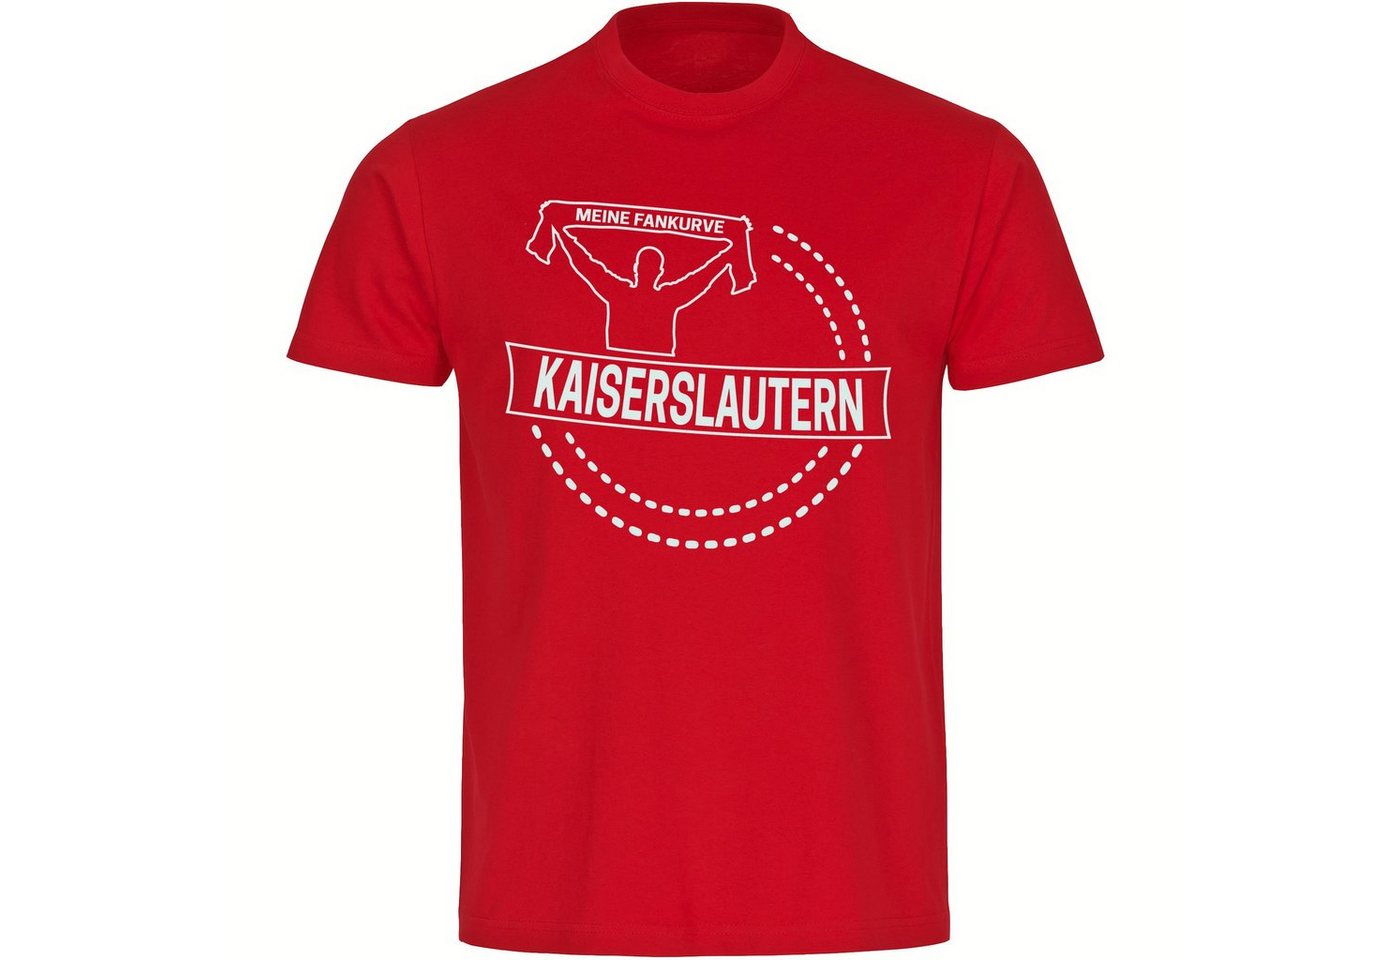 multifanshop T-Shirt Herren Kaiserslautern - Meine Fankurve - Männer von multifanshop